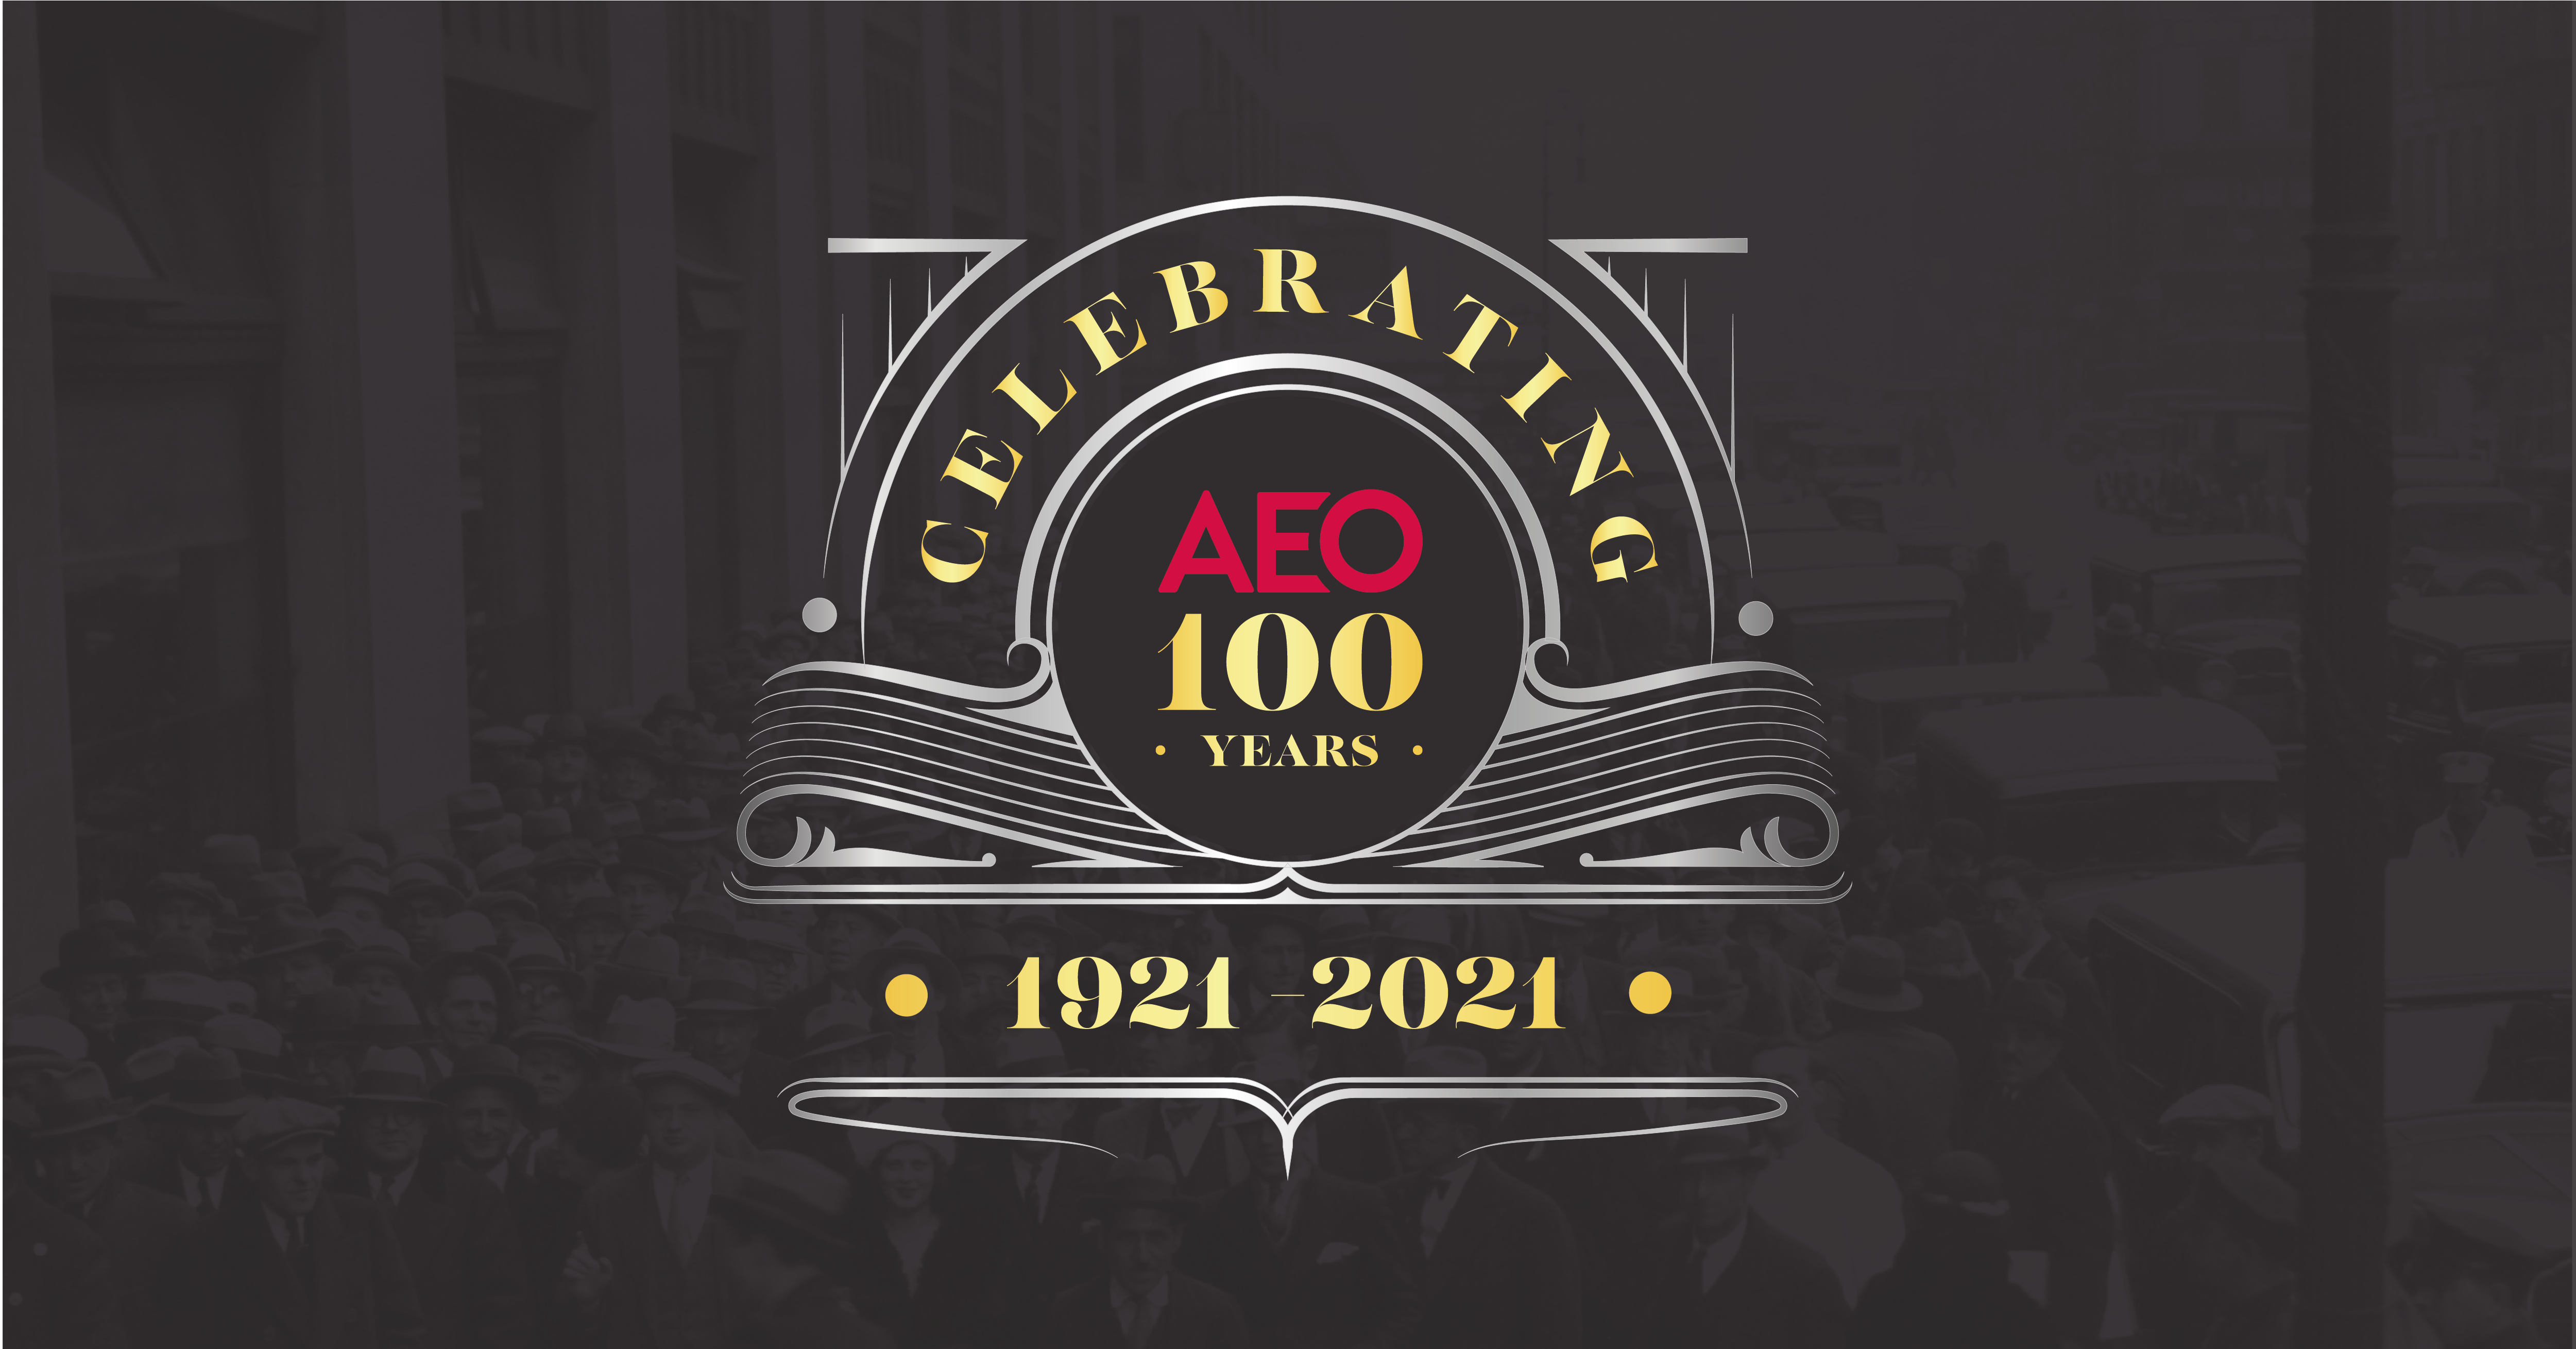 The AEO celebrates its centenary